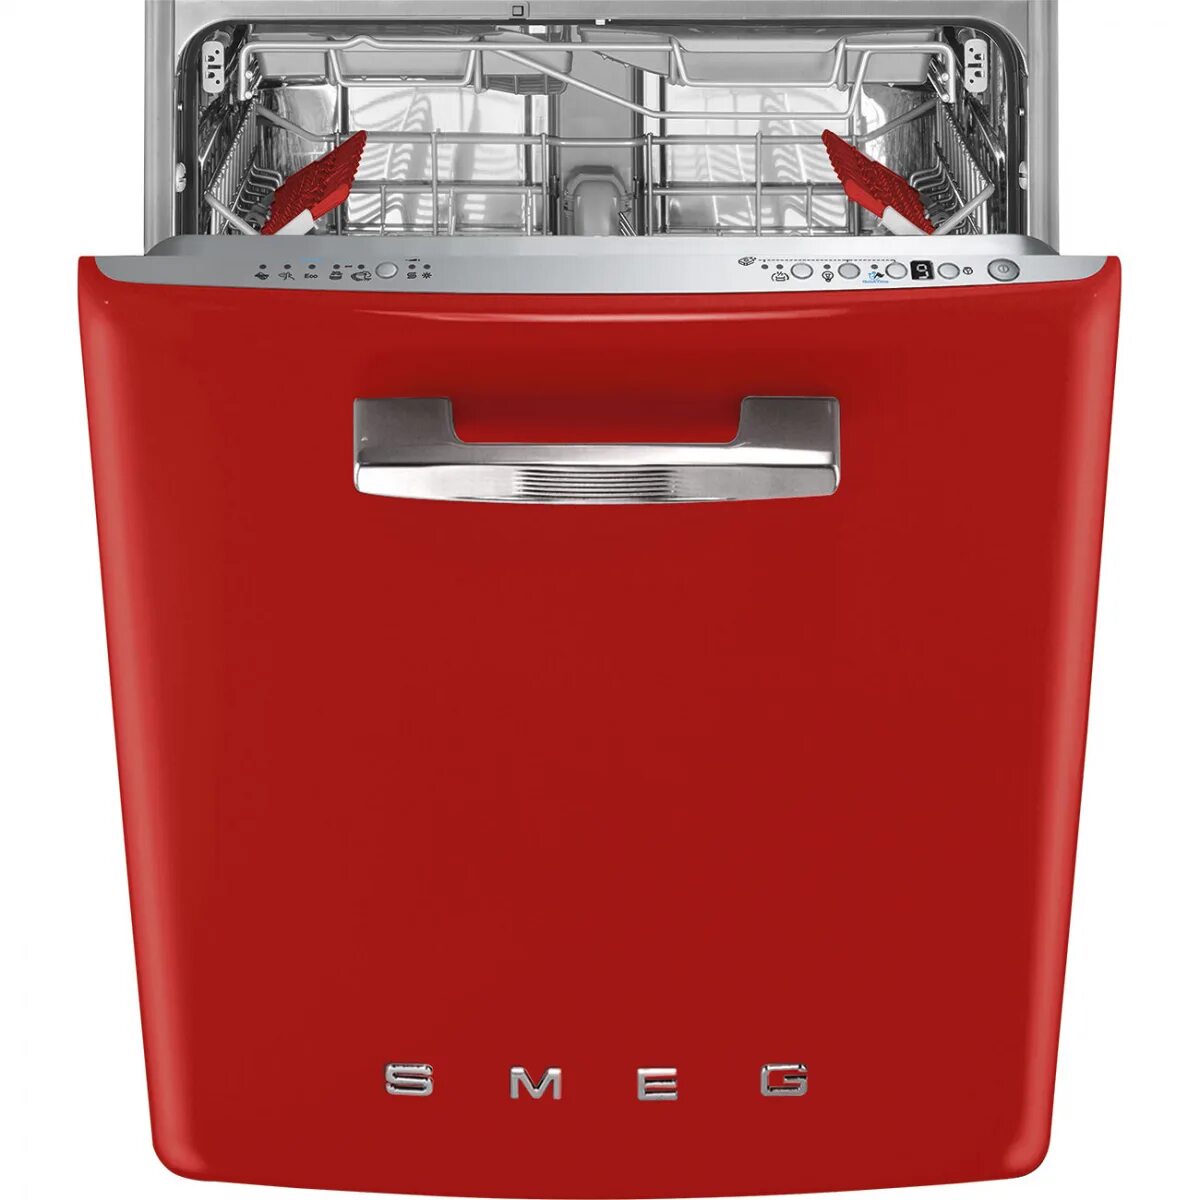 Посудомоечная машина купить в беларуси. Посудомоечная машина Smeg st2fabr2. Посудомоечная машина Smeg st2fabcr. Смег посудомоечная машина встраиваемая. Посудомоечная машина Смег 45 см встраиваемая.